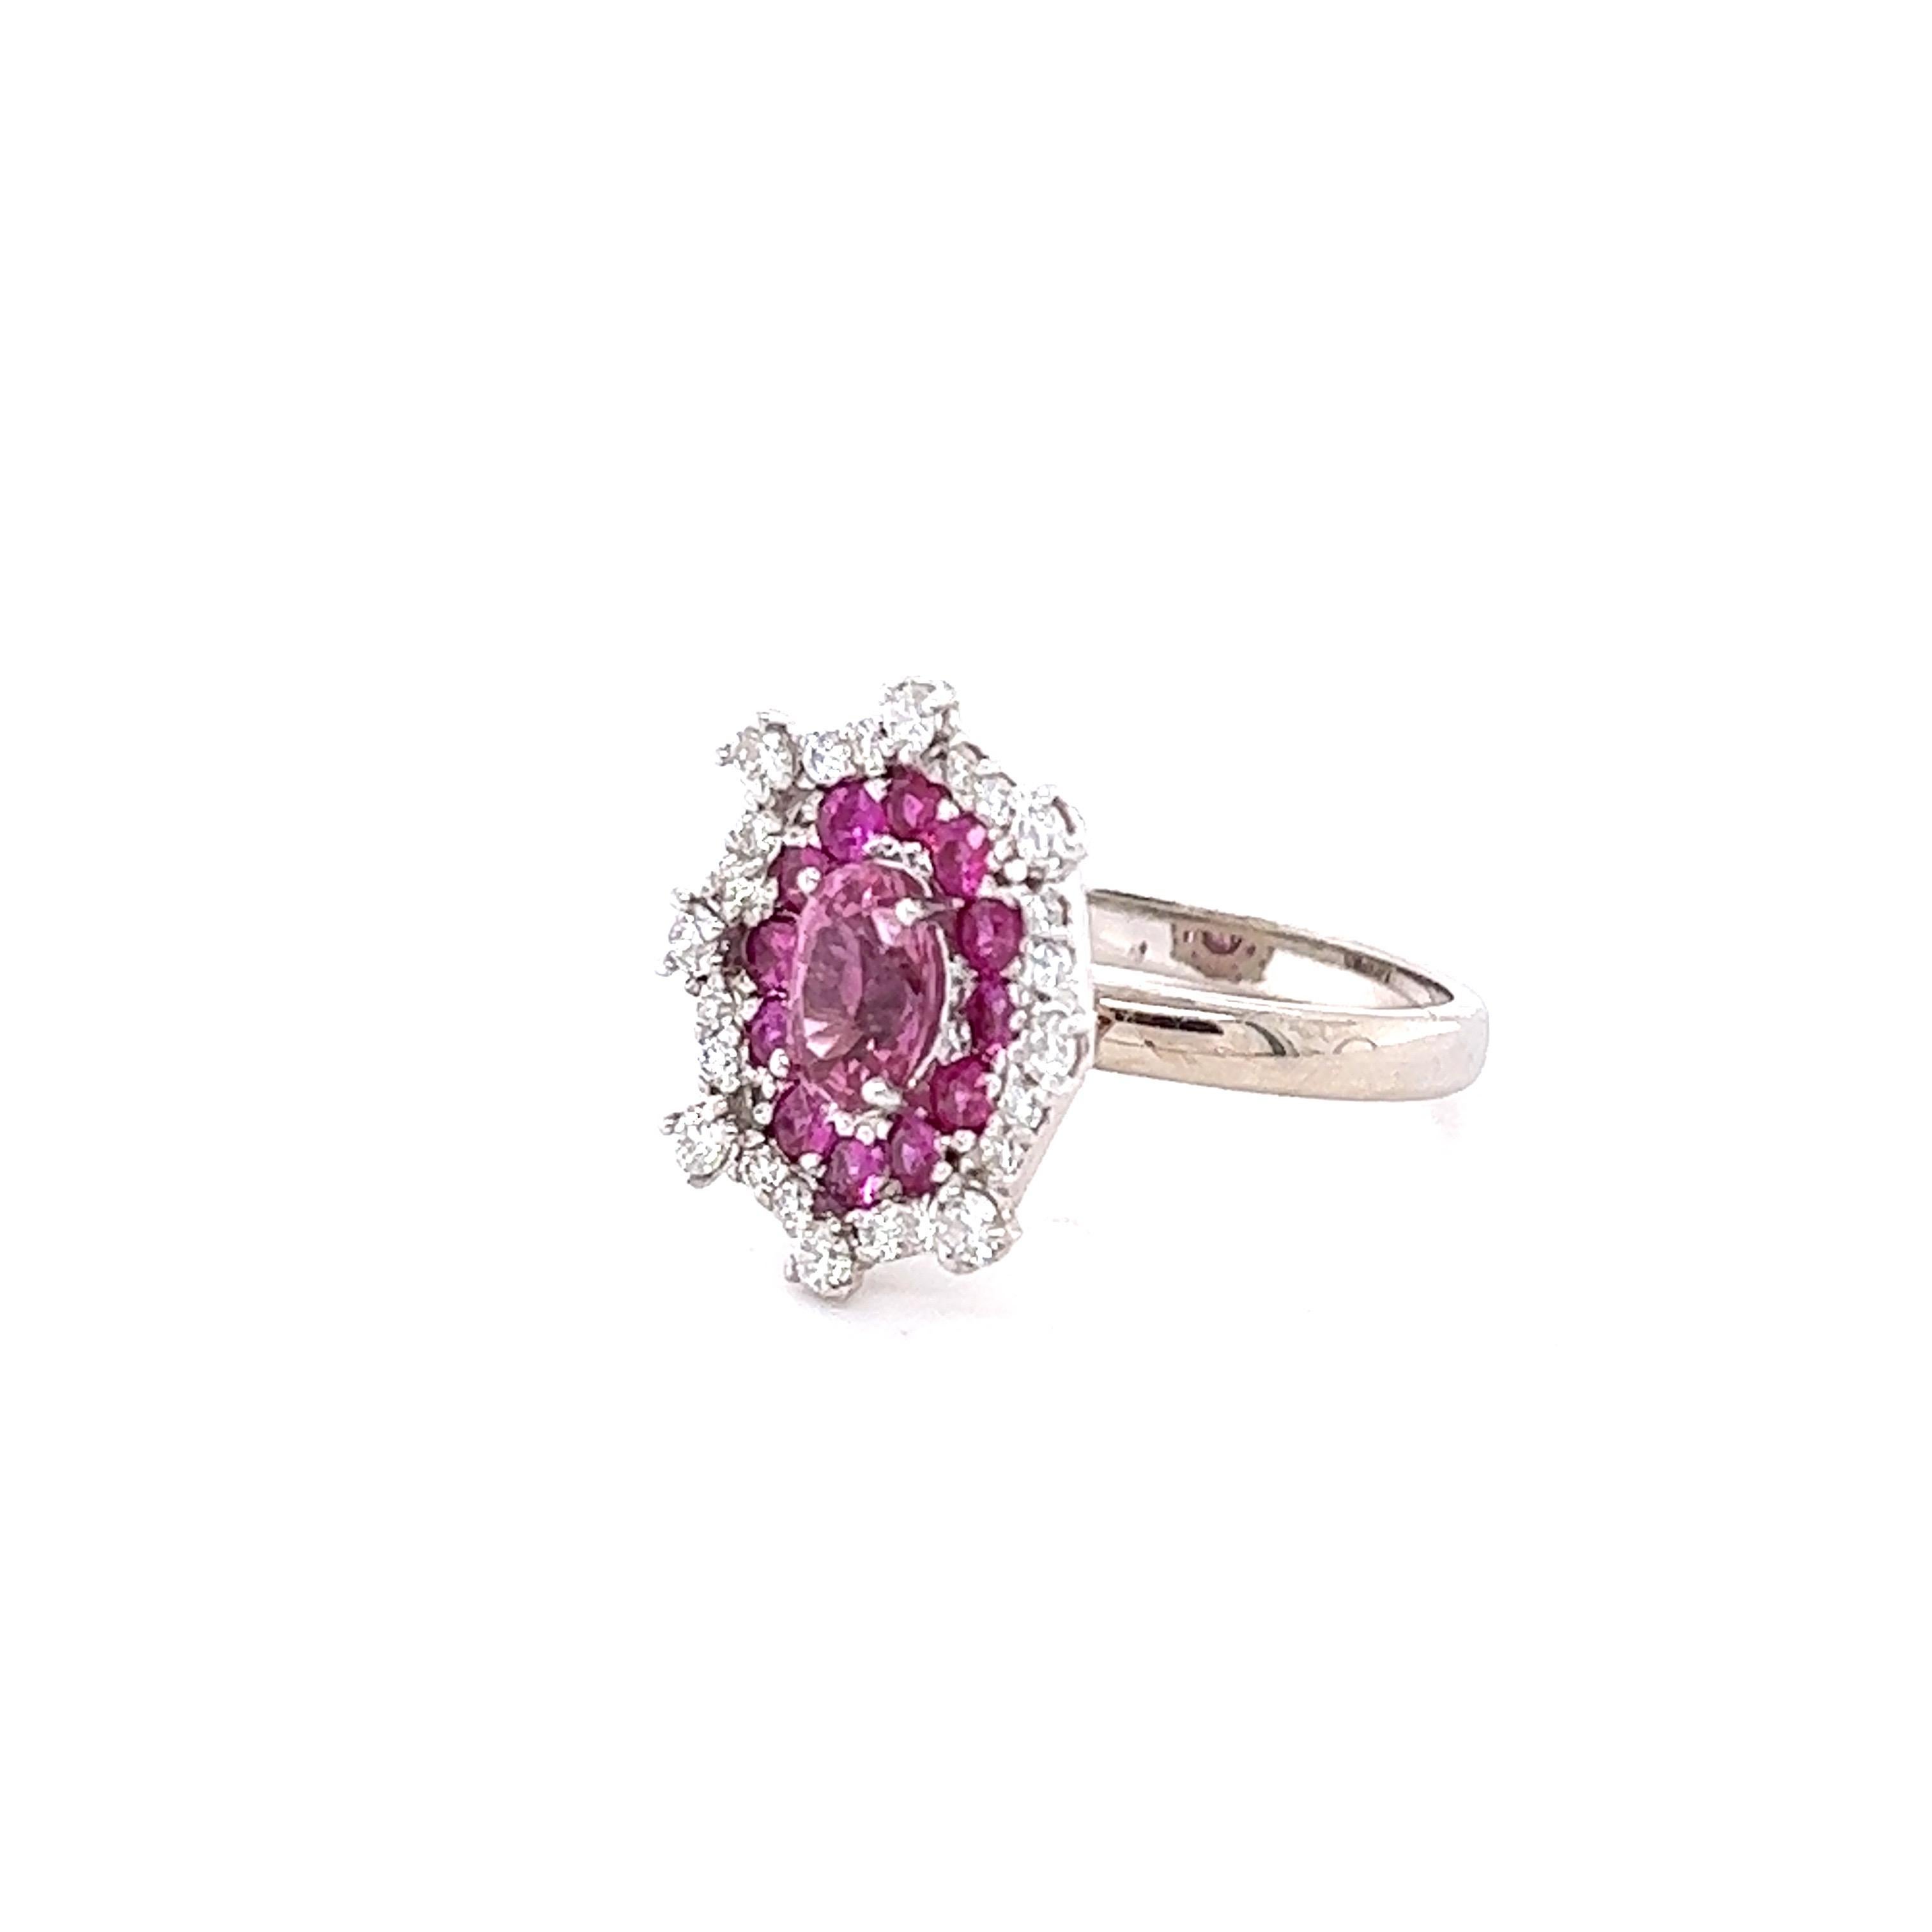 Dieser Ring hat eine Oval Cut Pink Sapphire, die 1,02 Karat wiegt. Die Abmessungen des Sapphire sind etwa 7 mm x 5 mm. Außerdem hat er 12 rosa Saphire im Rundschliff mit einem Gewicht von 0,58 Karat. Es 24 Round Cut Diamanten auf den Schenkeln des